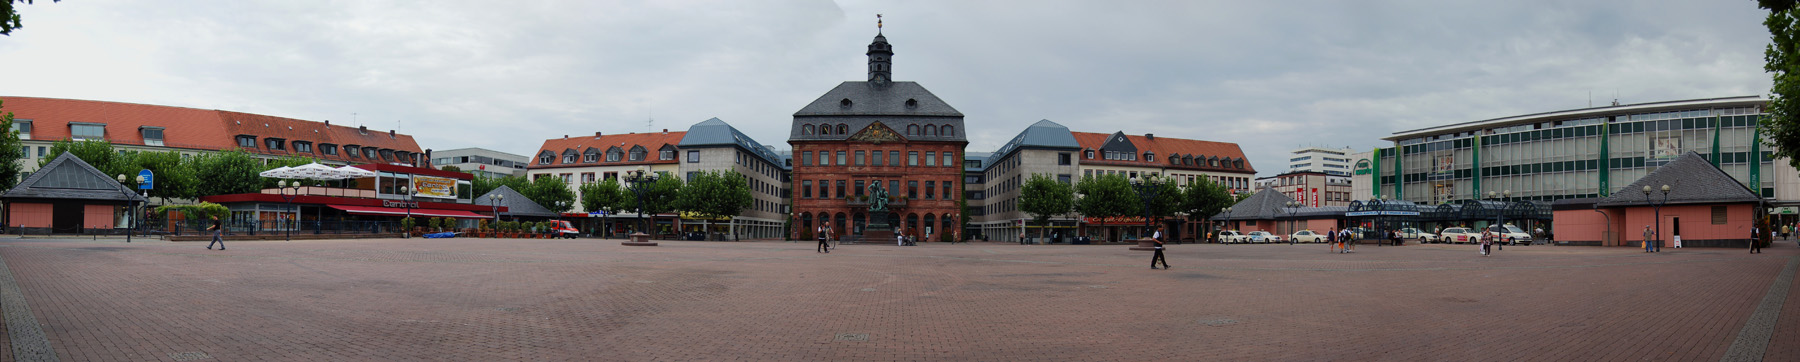 : Markt Platz